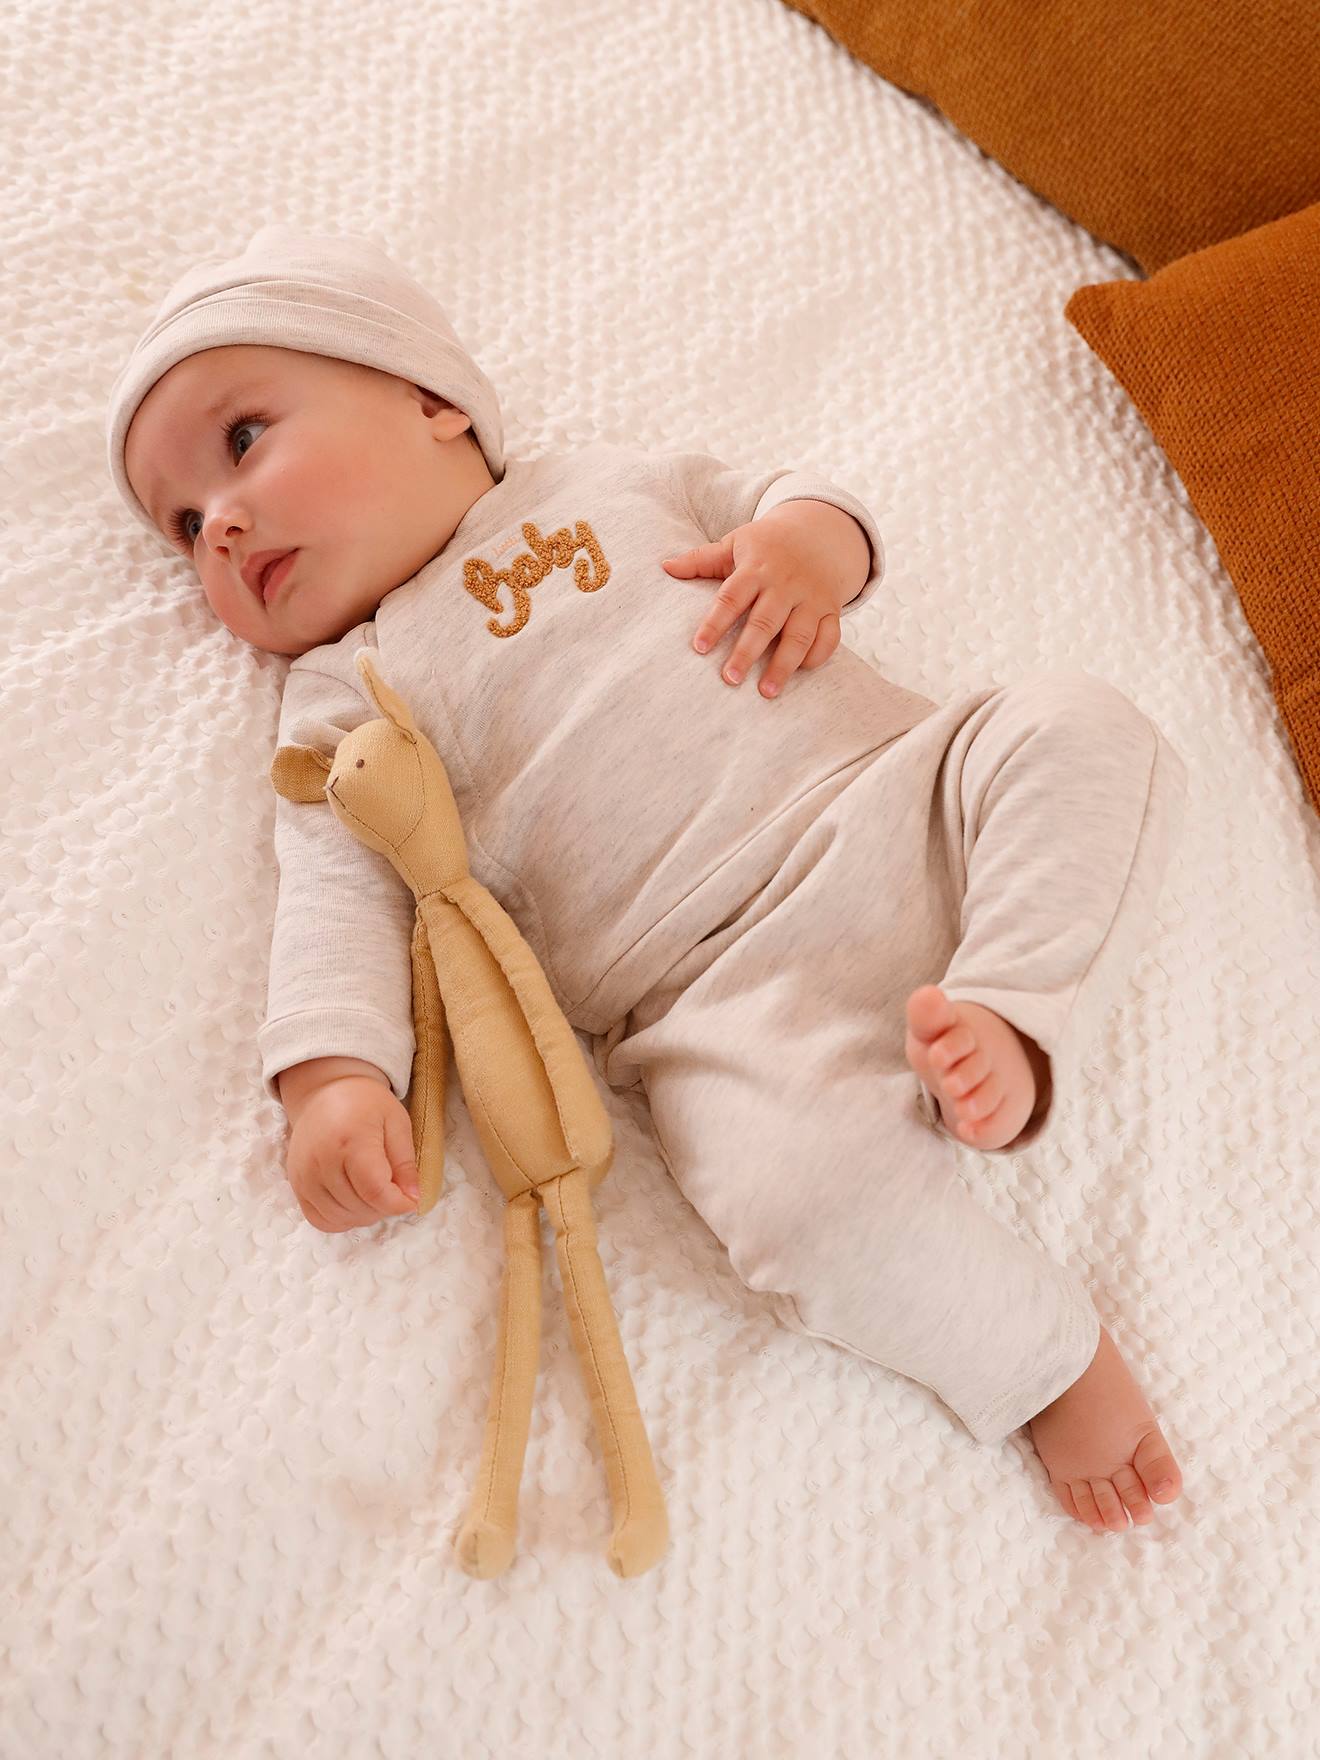 Vetement bebe garcon - Bébé 9 - 3 mois